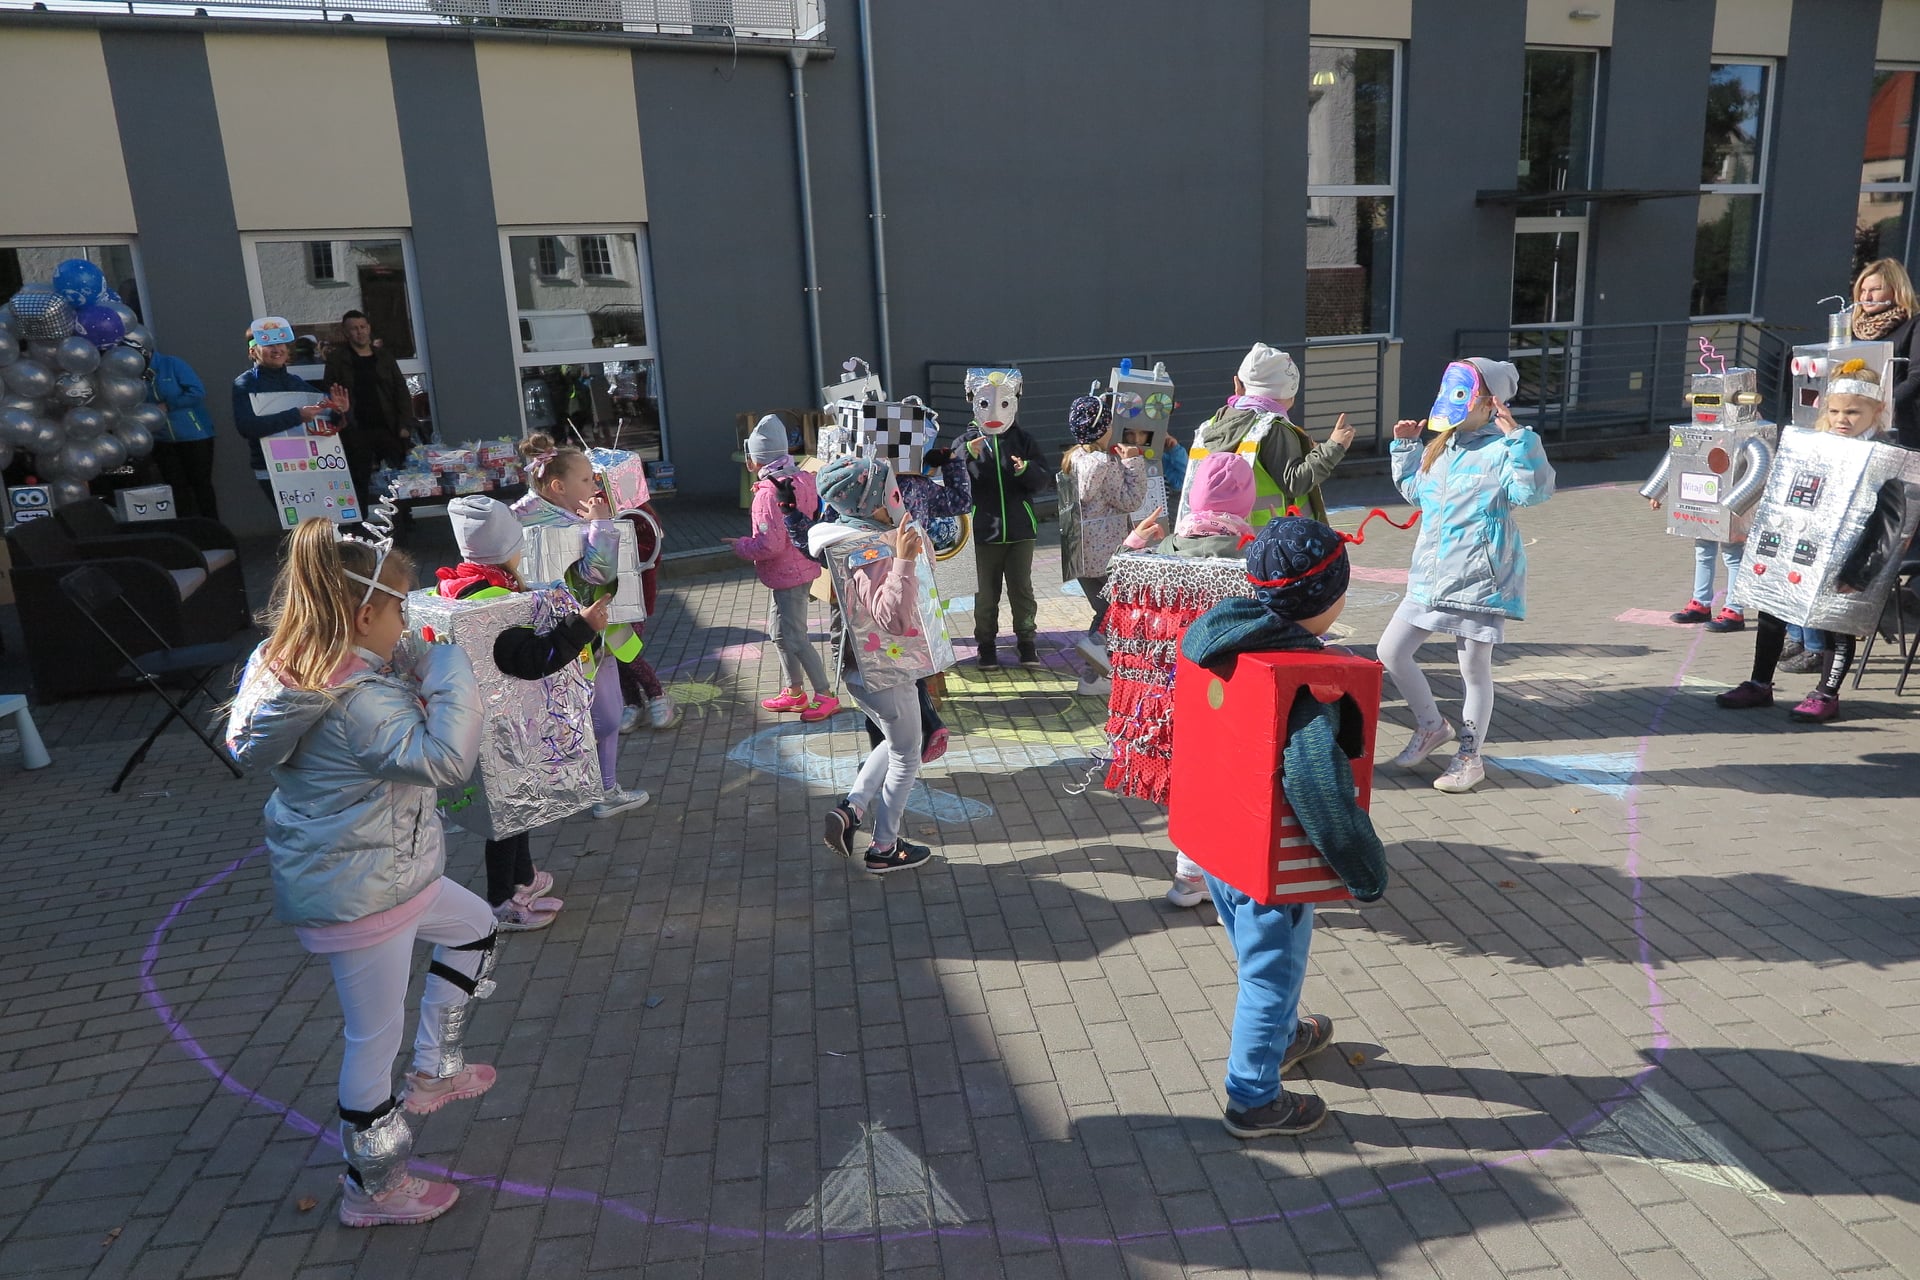 plac przed biblioteką, na placu inna grupa dzieci przebrana za roboty tańczy, w tle widać budynek biblioteki, organizatora marszu i balony